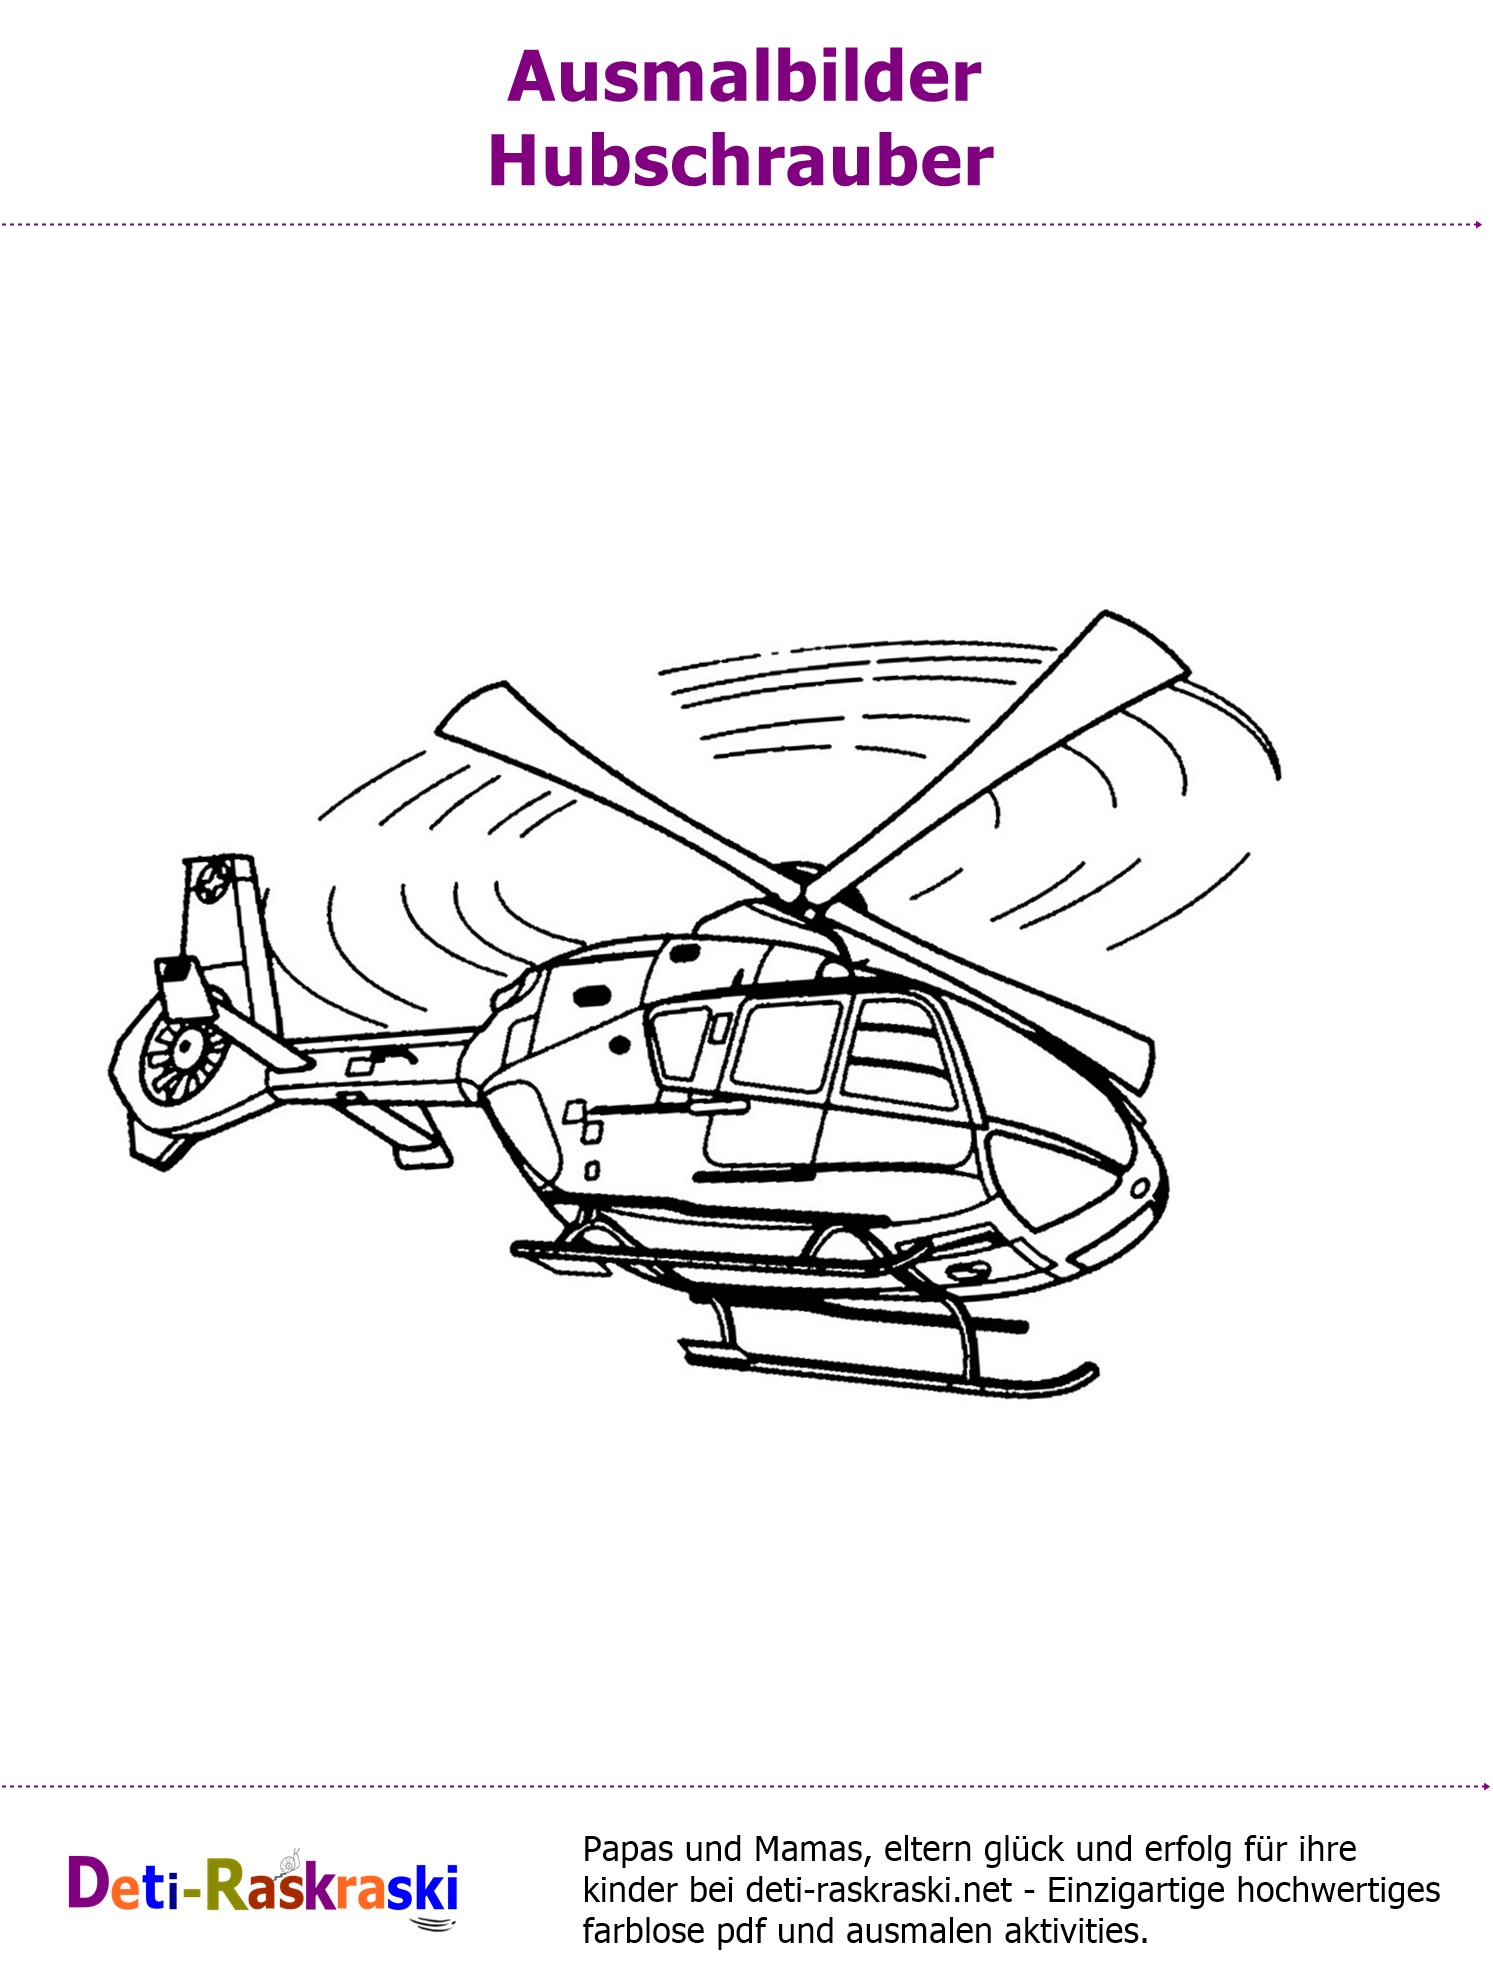 Ausmalbilder Hubschrauber Kostenlos als PDF